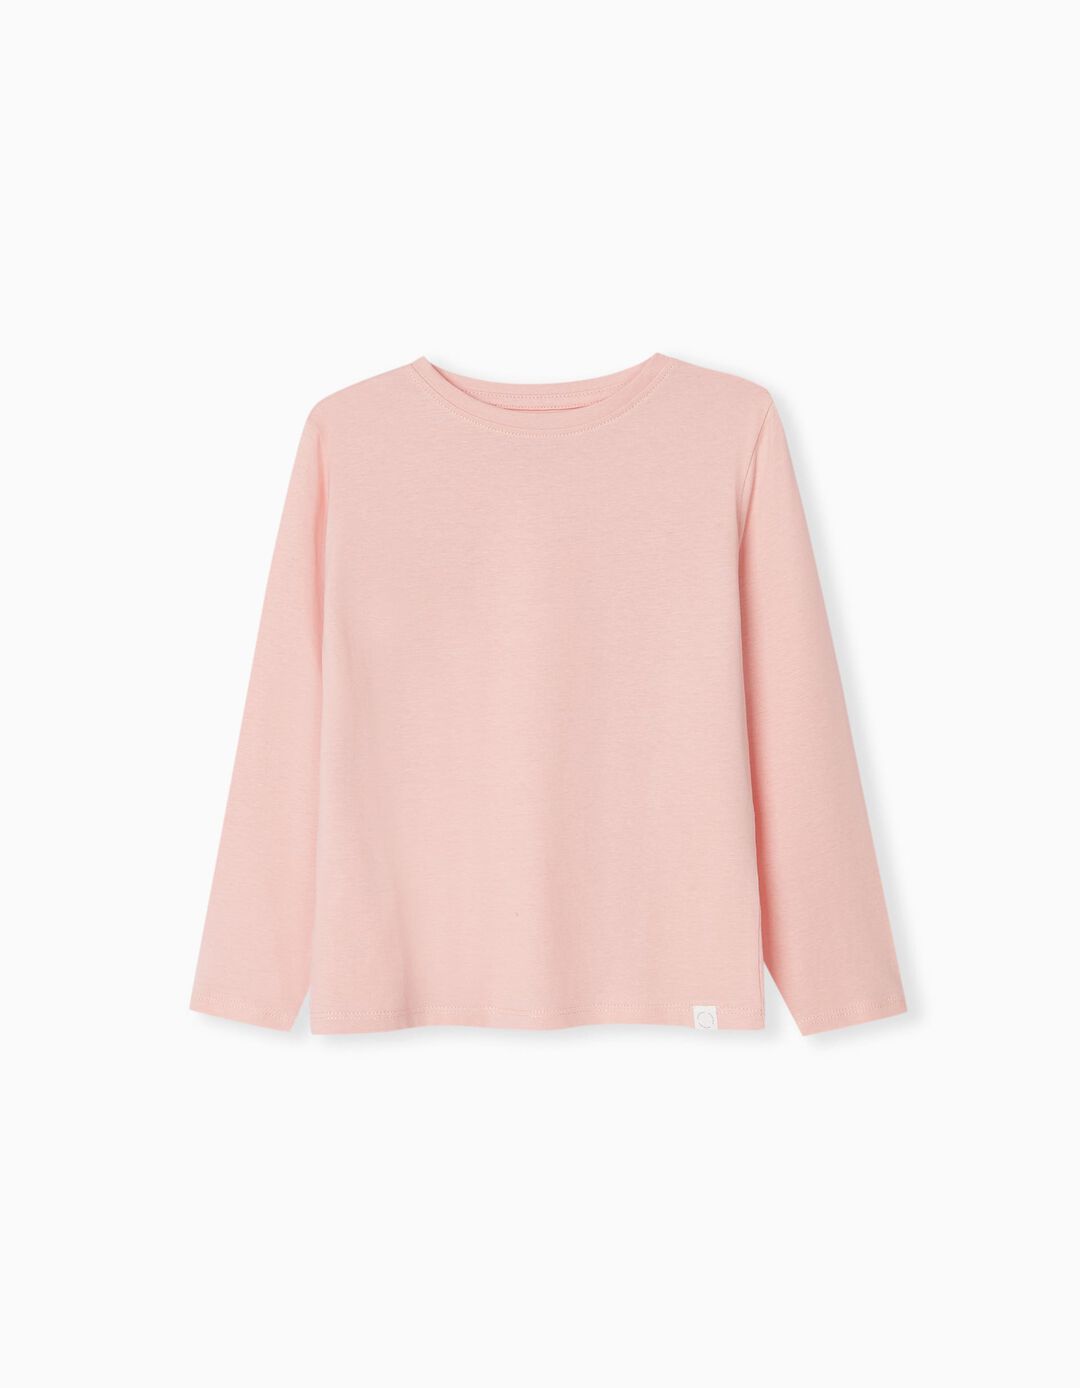 Long Sleeve T-shirt, Girls, Light Pink